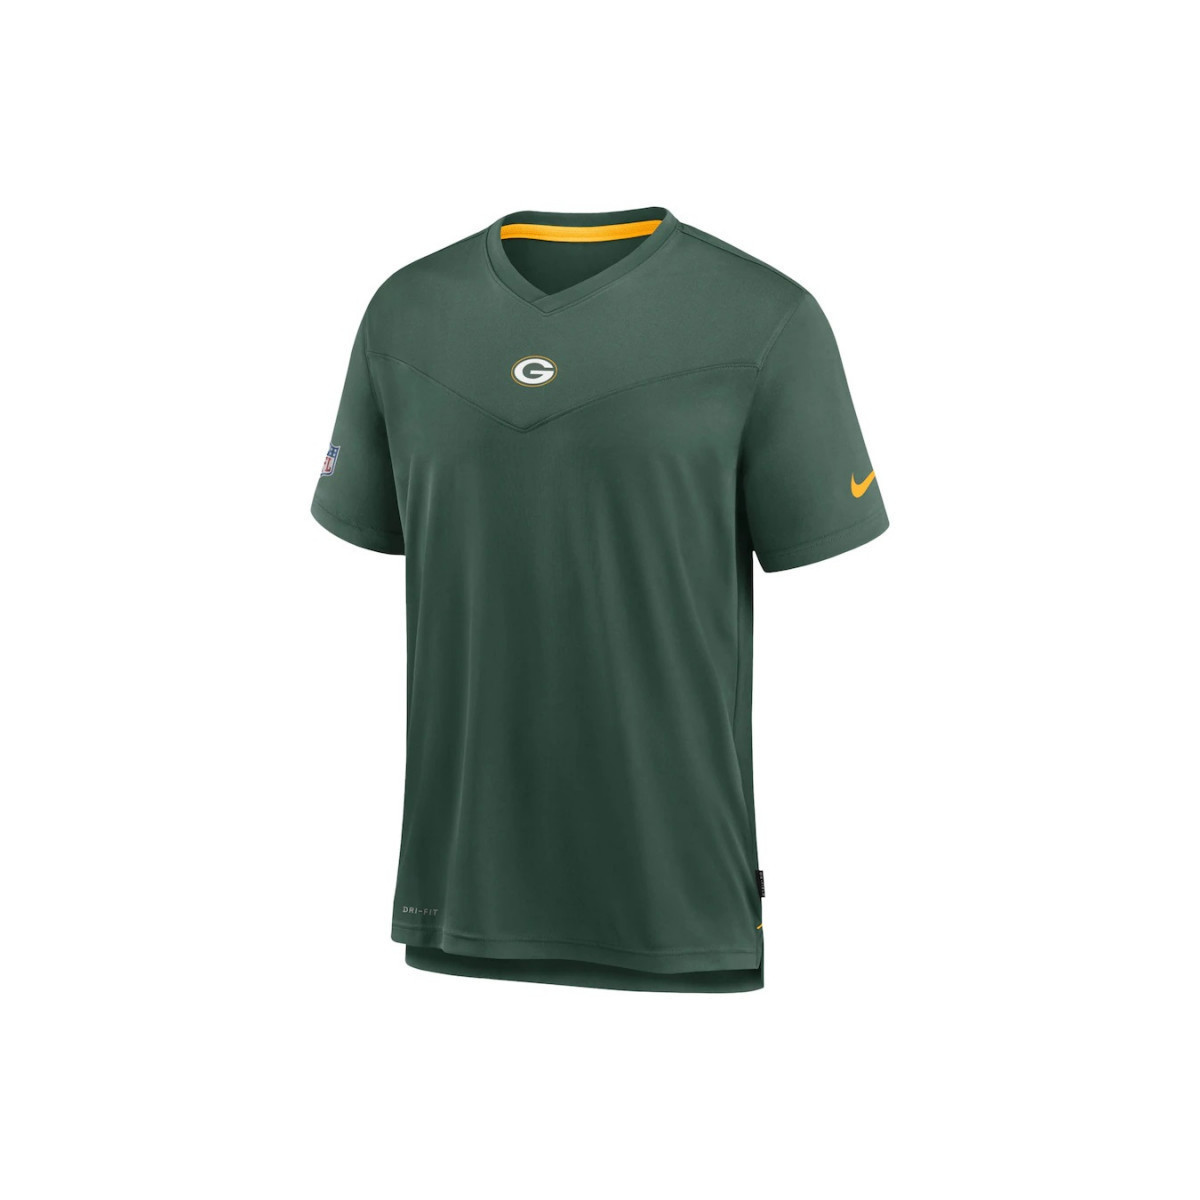 Nike T shirt NFL Greenbay Packers N 20558694 1200 A